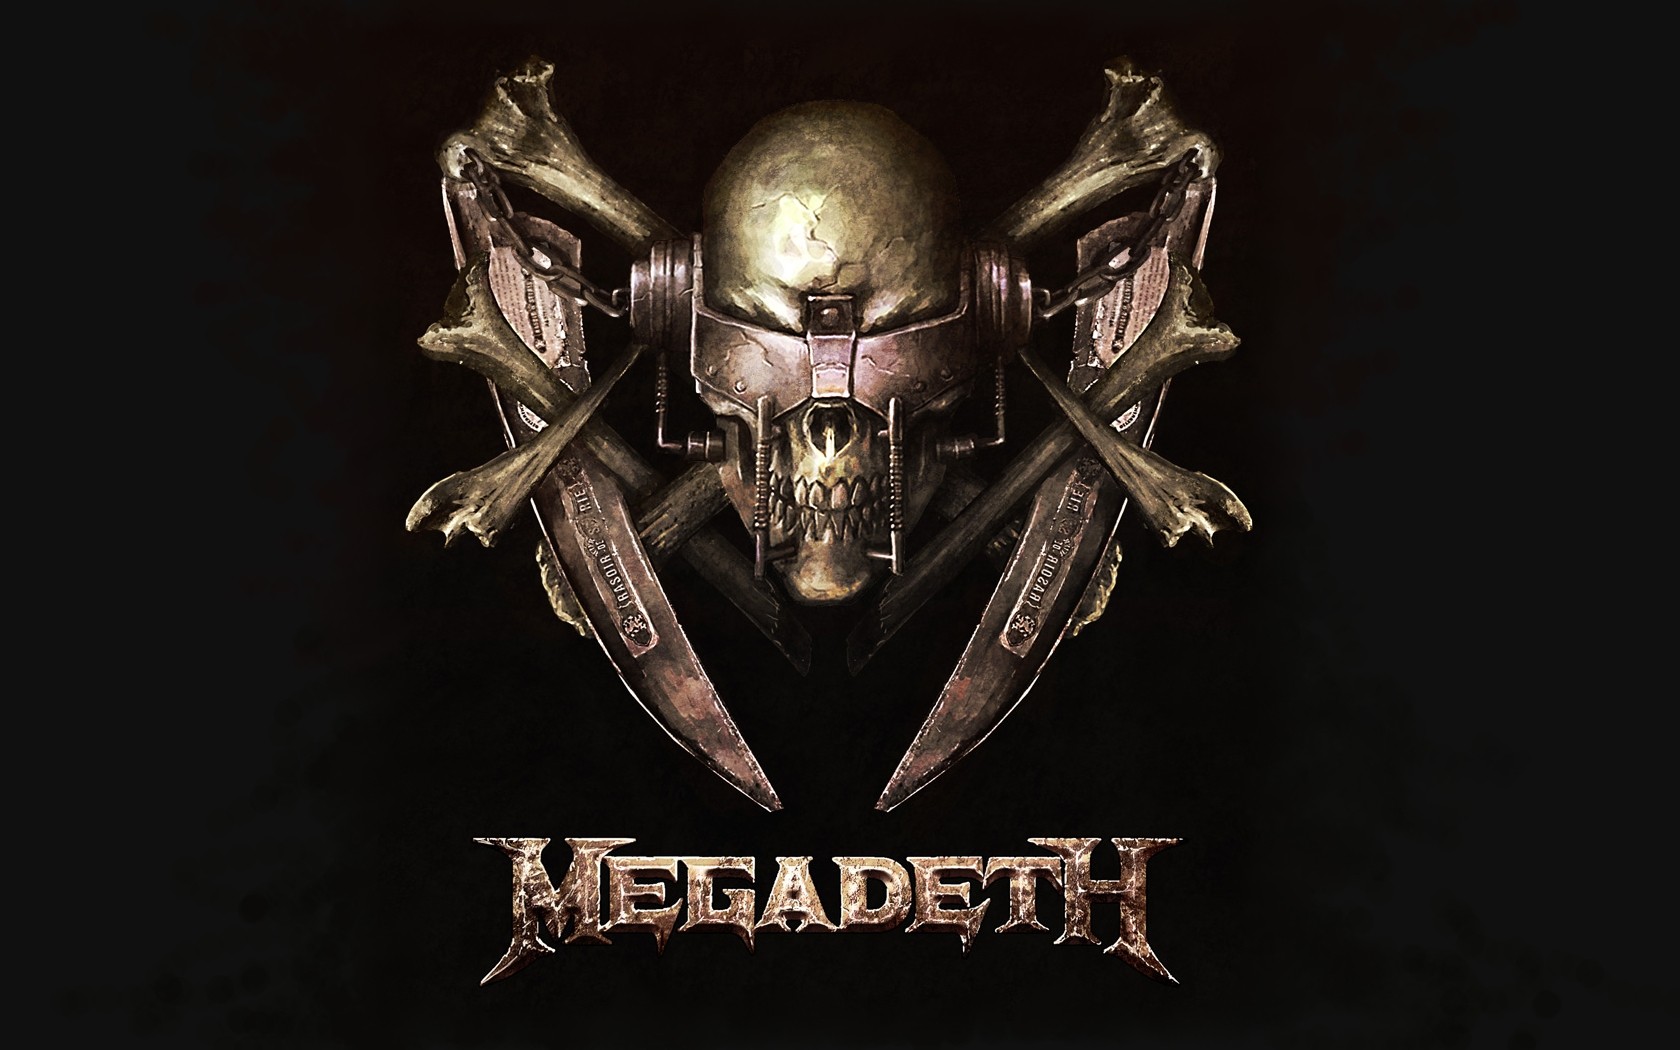 Skull Megadeth Music Metal Band Band Big 4 Vic Rattlehead Band Logo Band Mascot 1680x1050